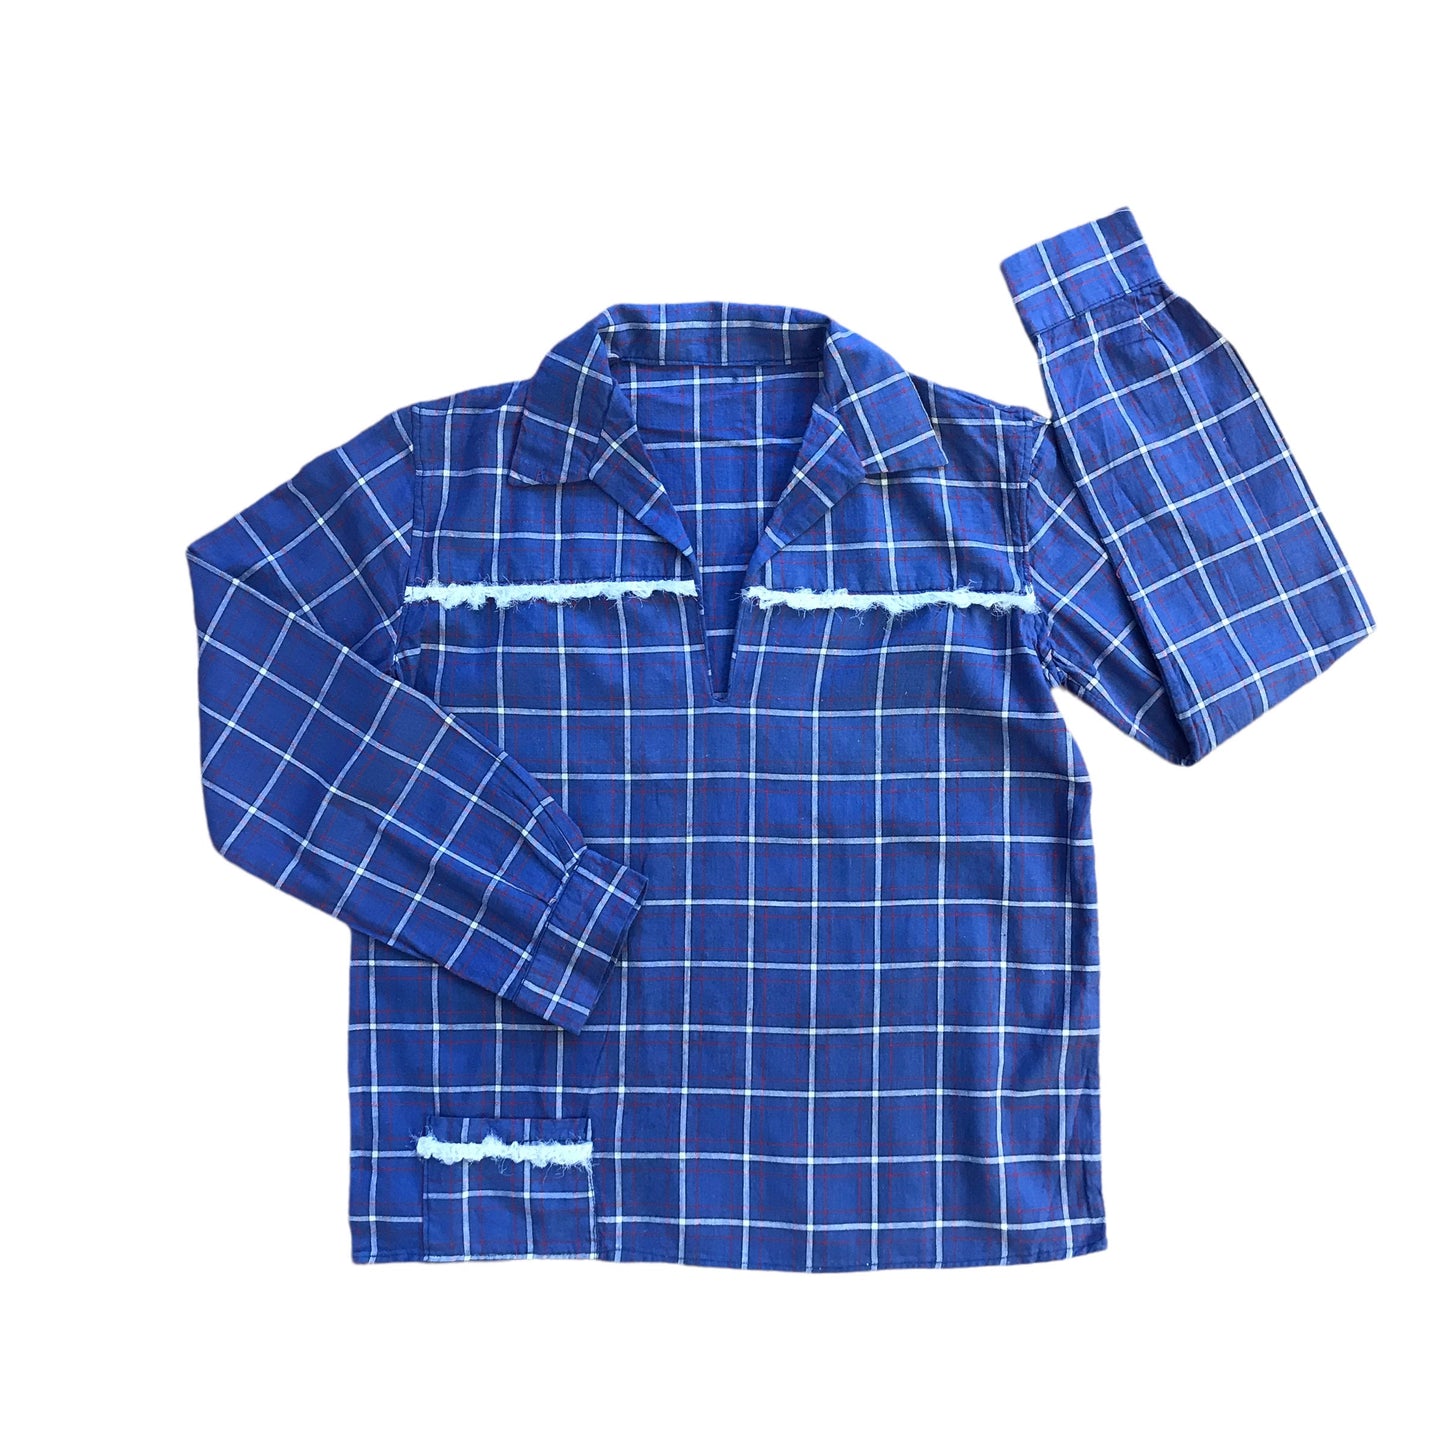 Vintage 1960s  Boho Check Blue Shirt  8-10Y